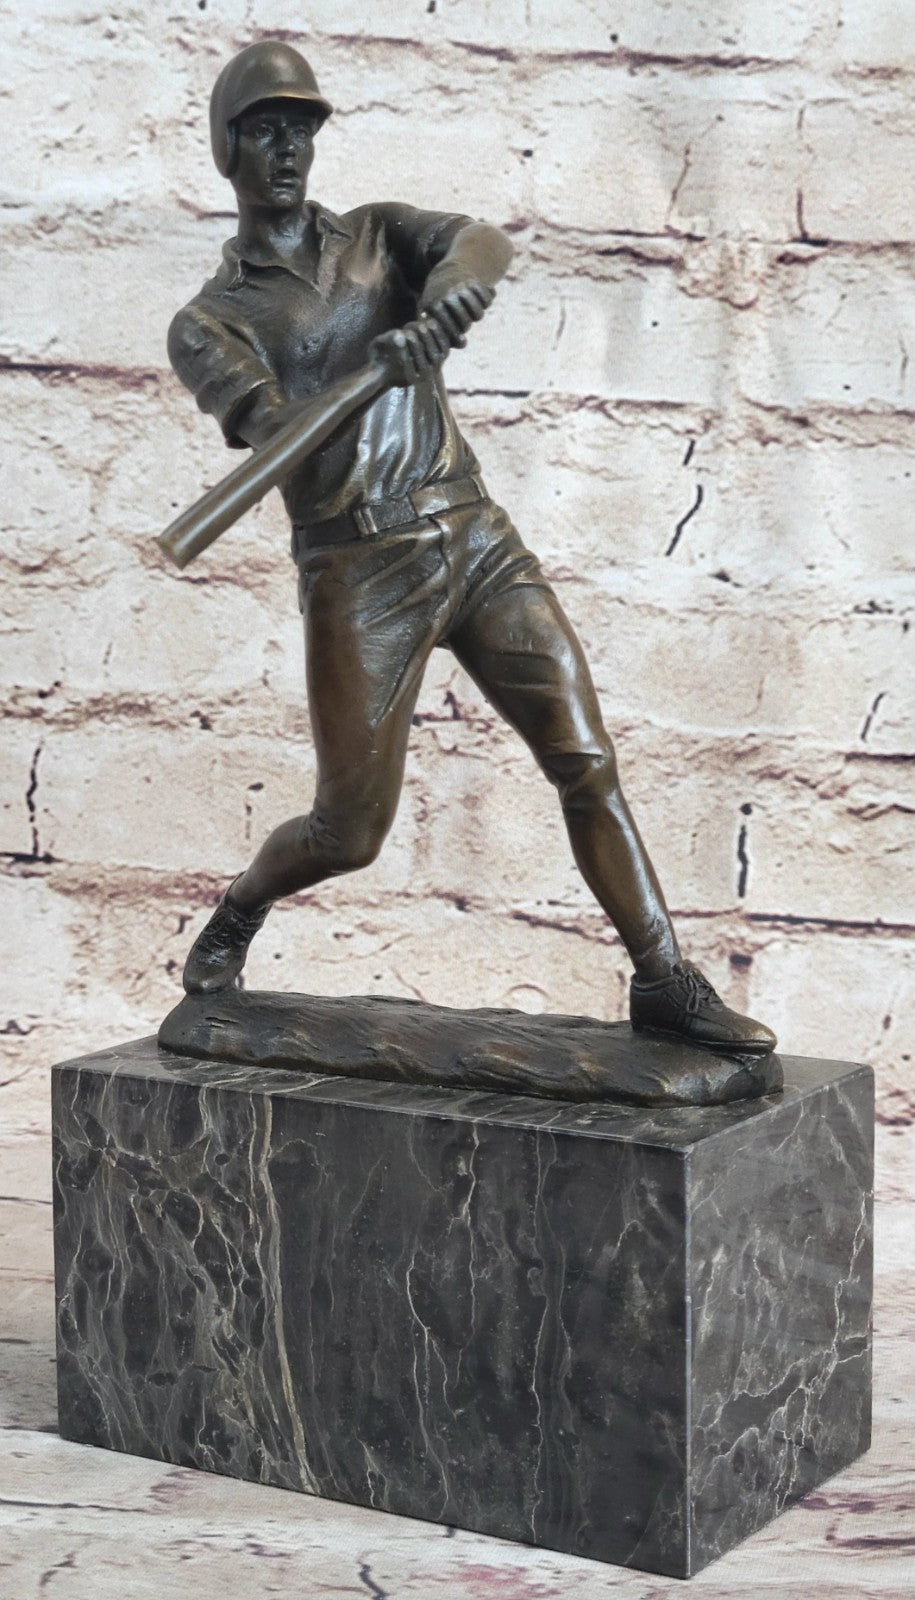 Hot Cast Signed Original Baseball player Trophy Gift Bronze Sculpture Statue